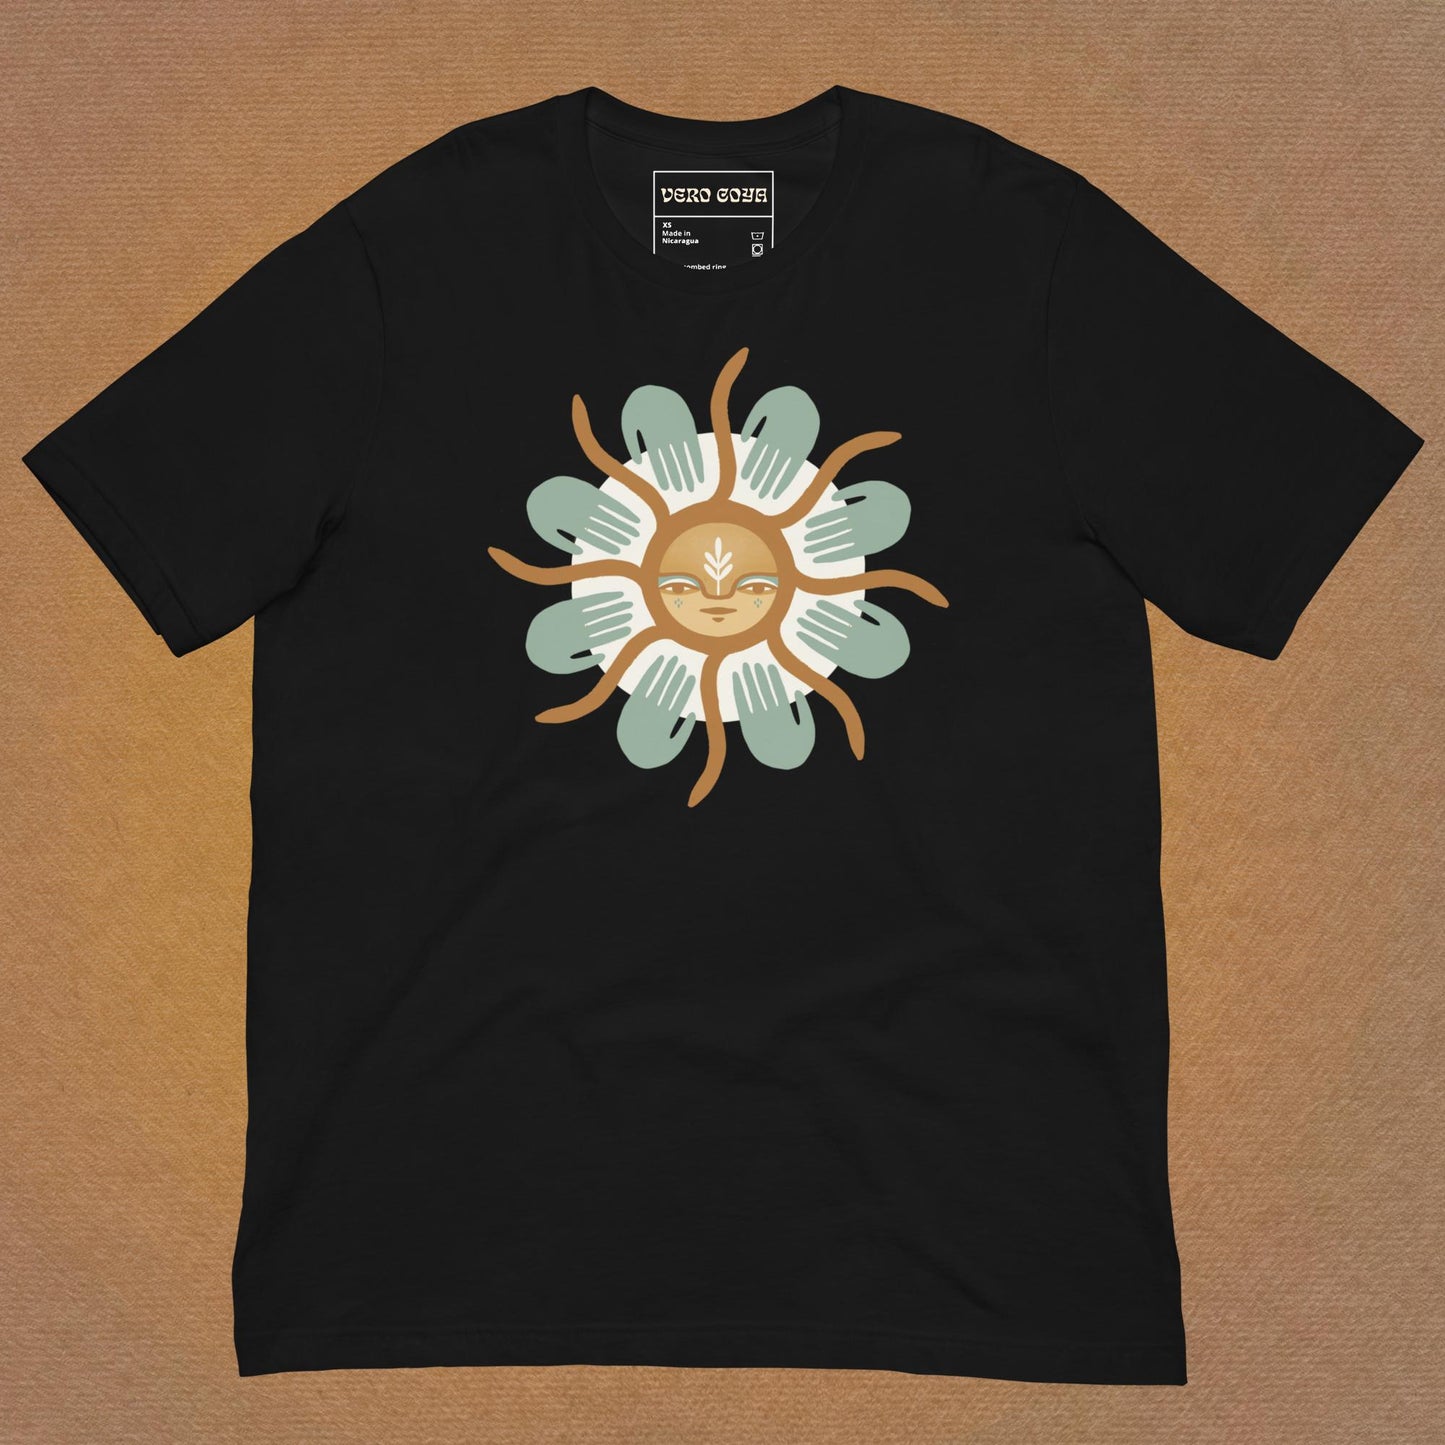 Blue Hand Sun - Unisex t-shirt